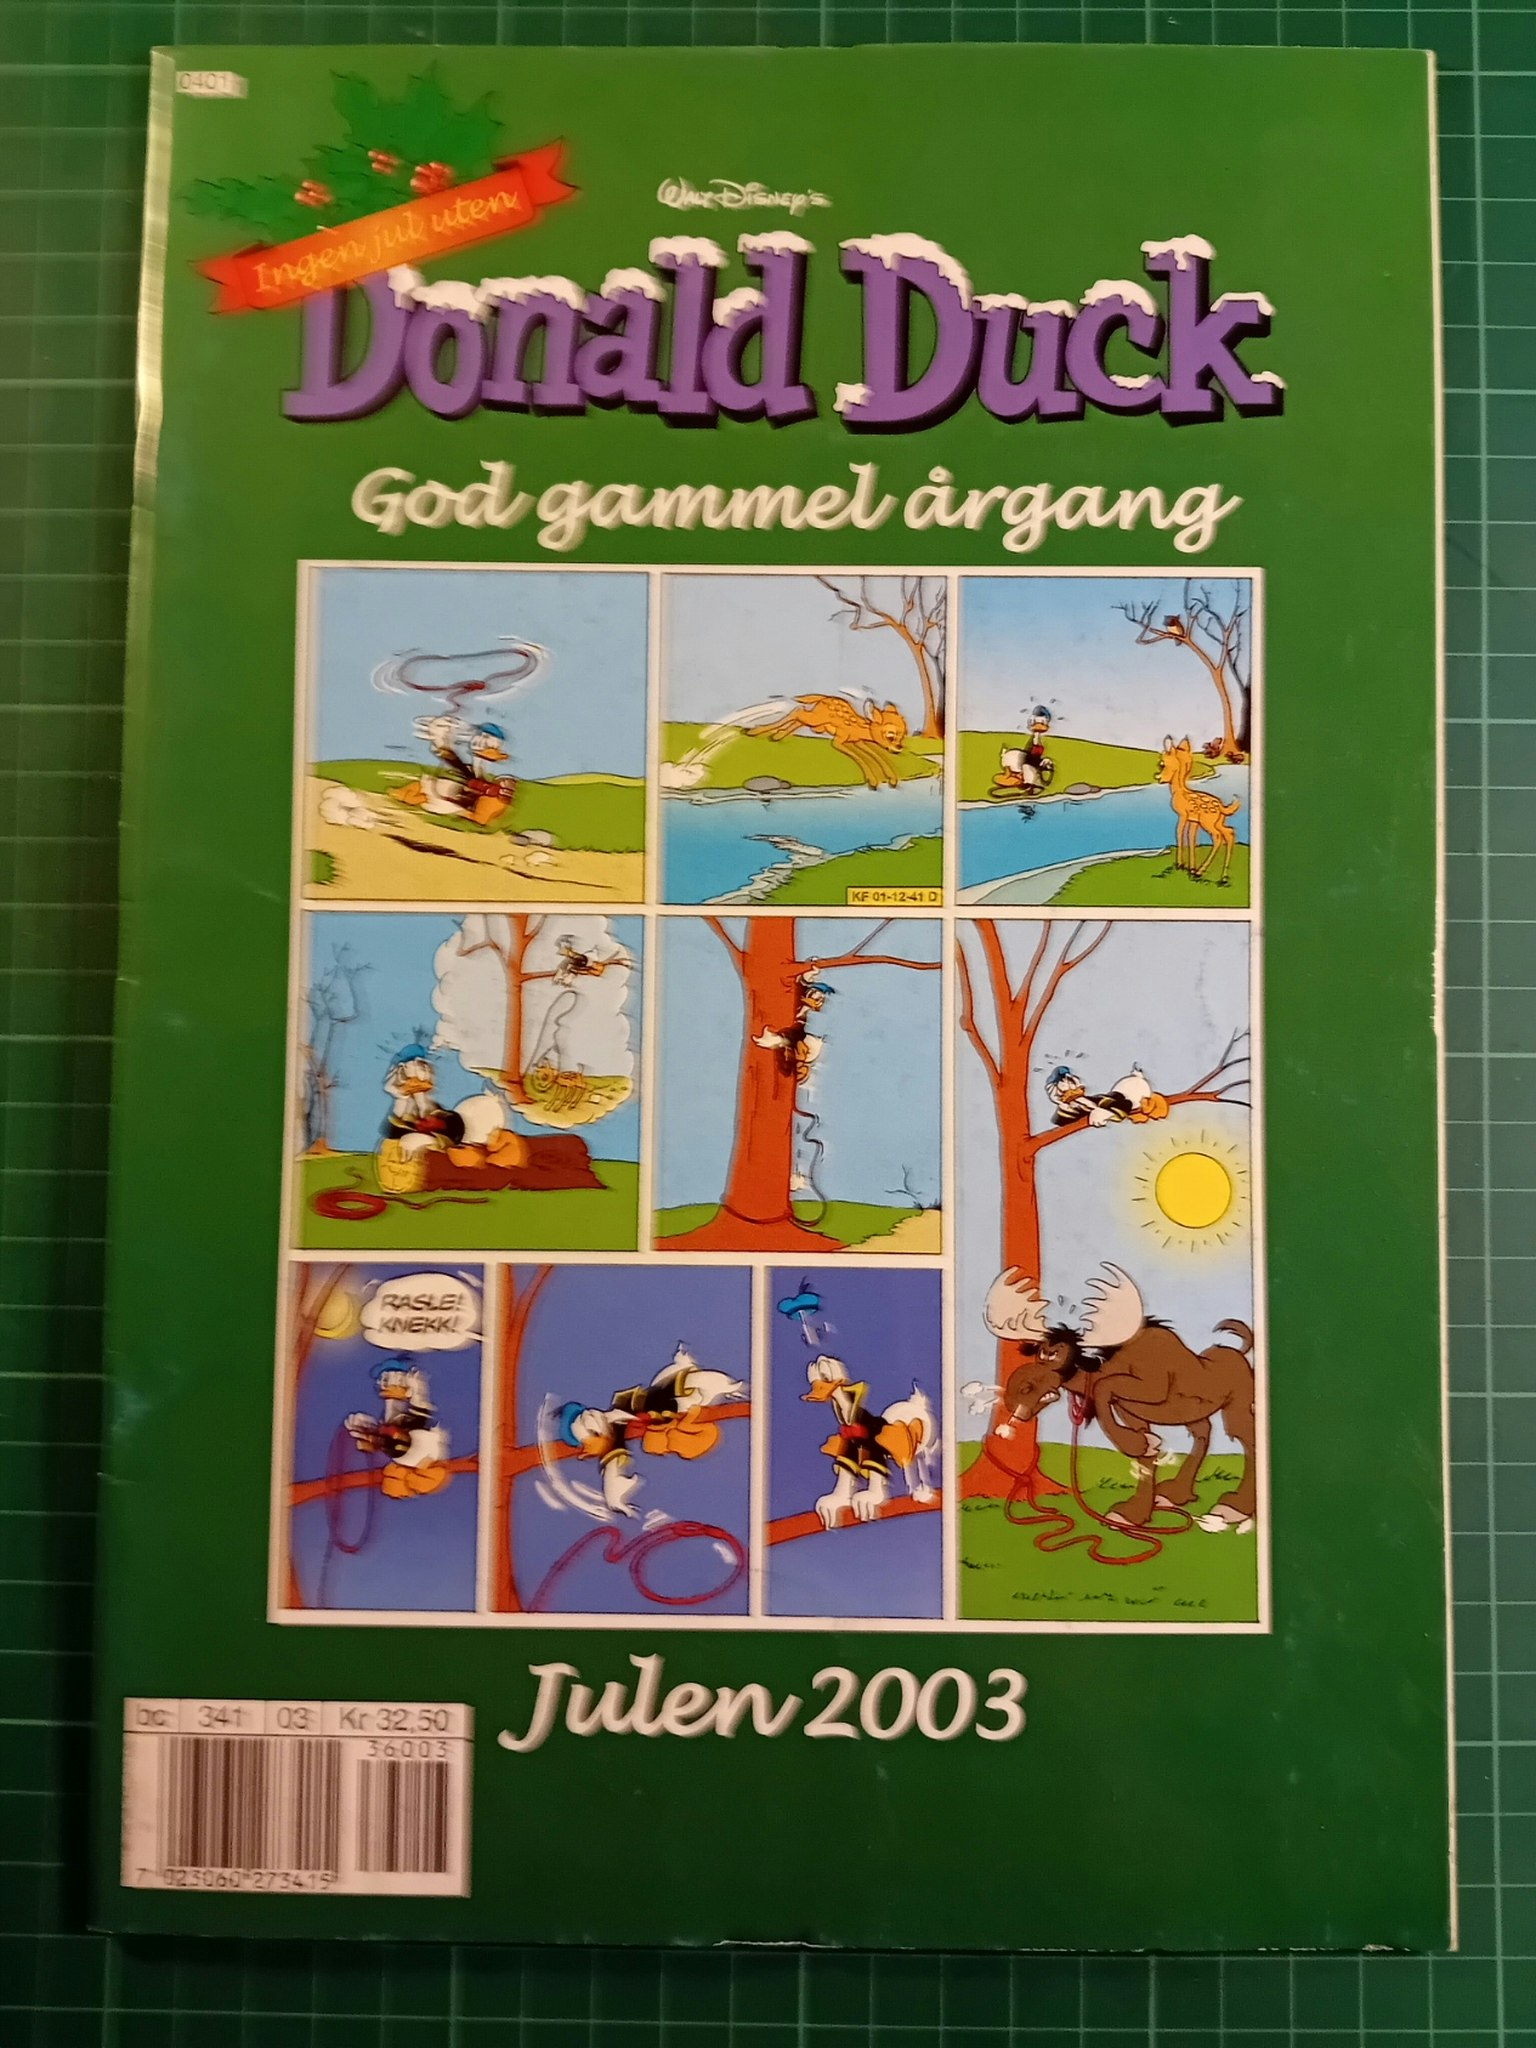 Donald Duck God gammel årgang 2003